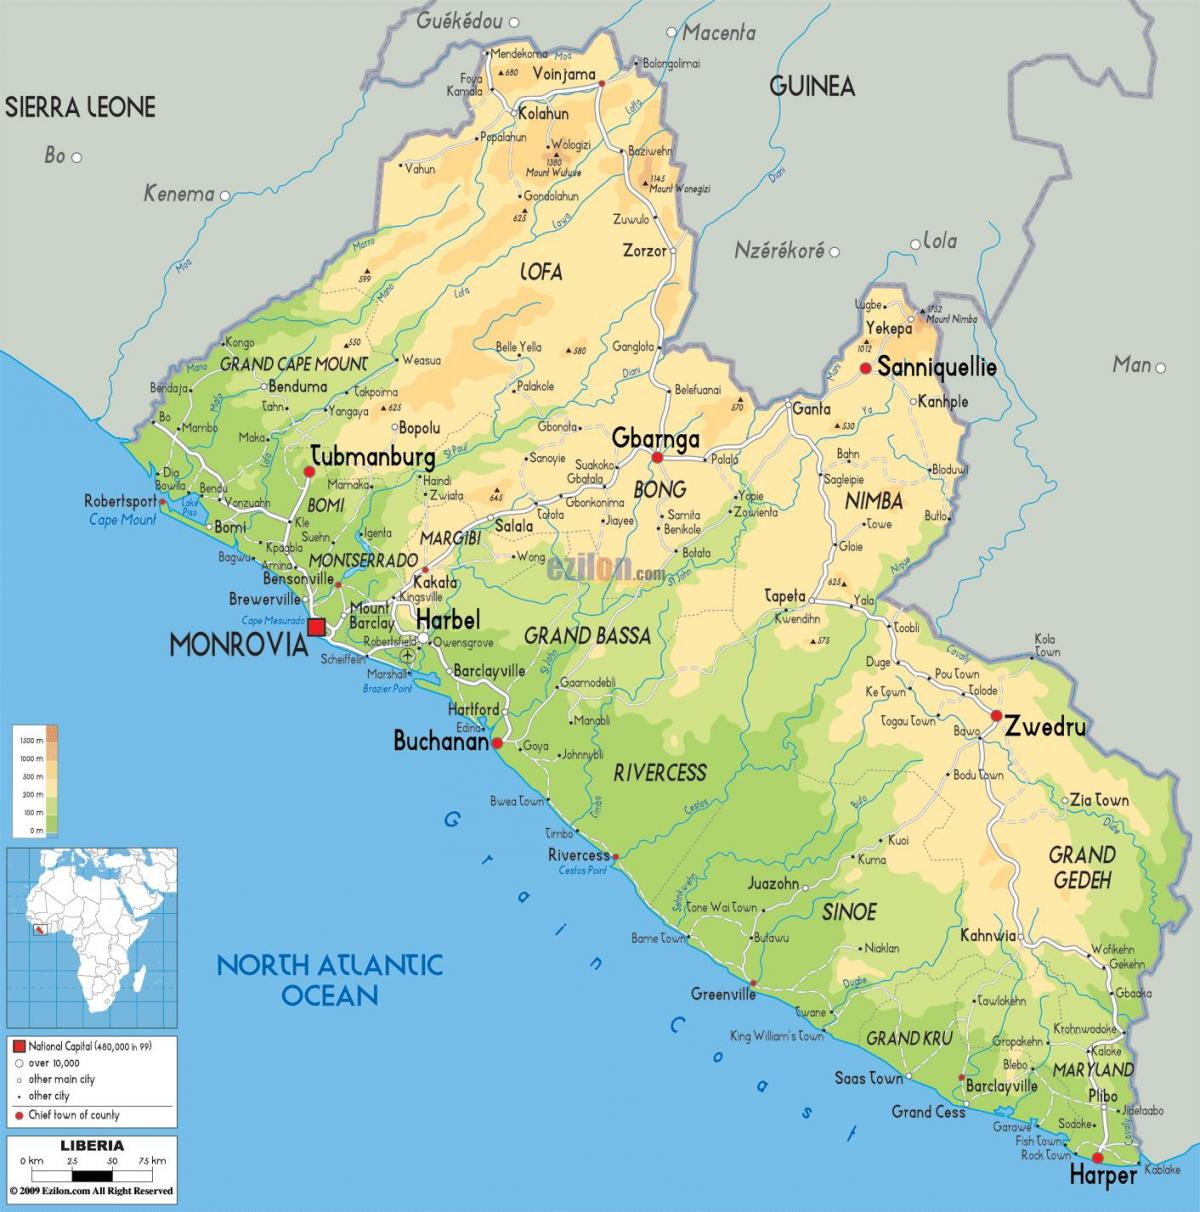 Liberya haritası çizmek 